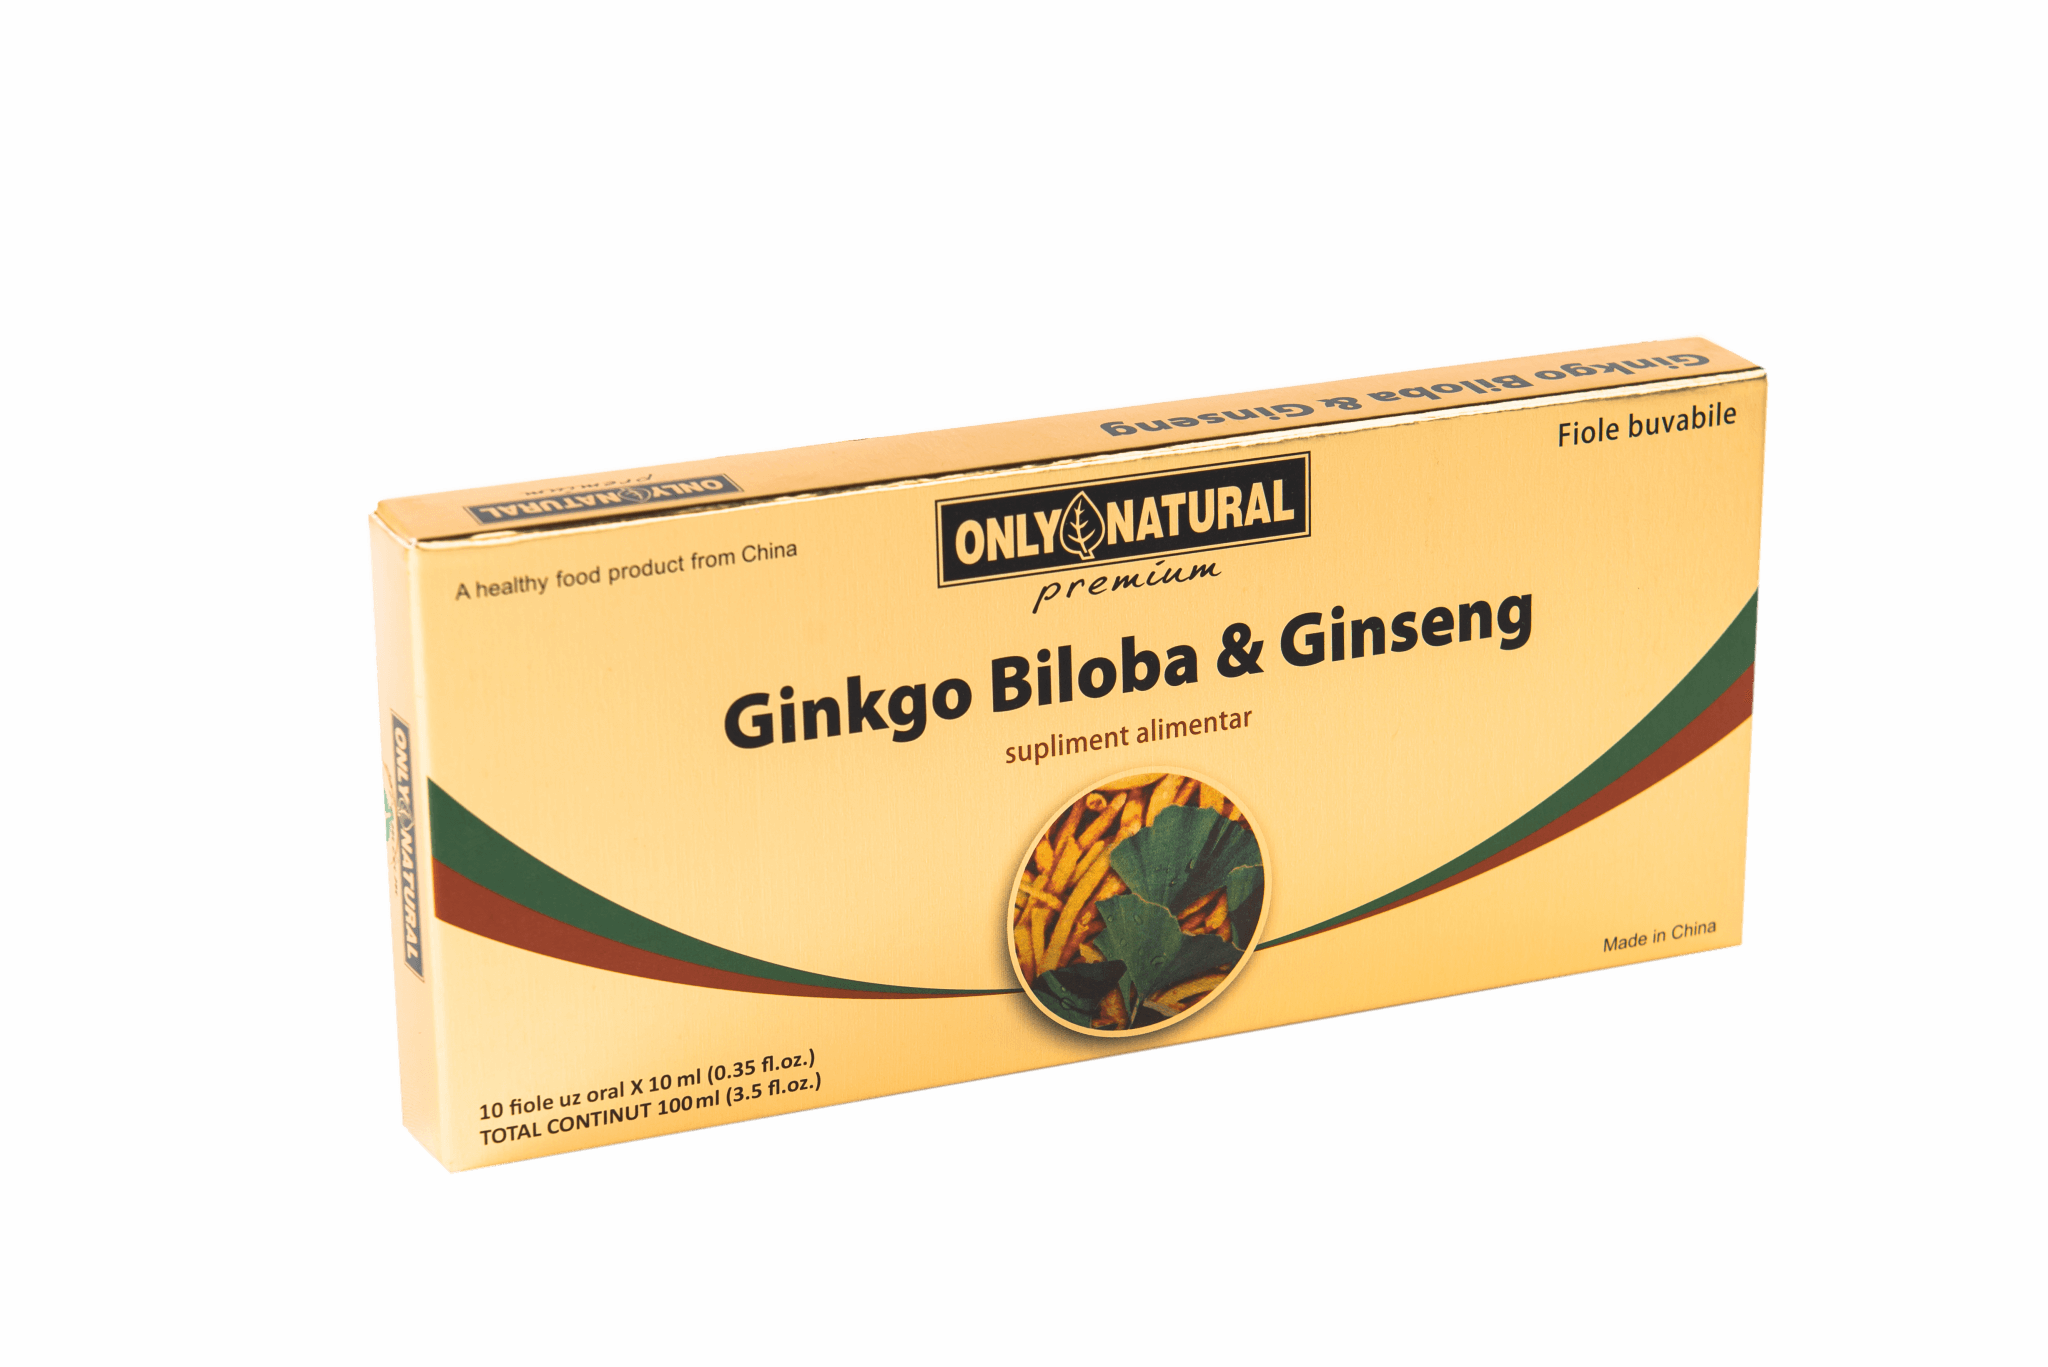 ONLY NATURAL GINKGO BILOBA + GINSENG 10 FIOLE X 10ML